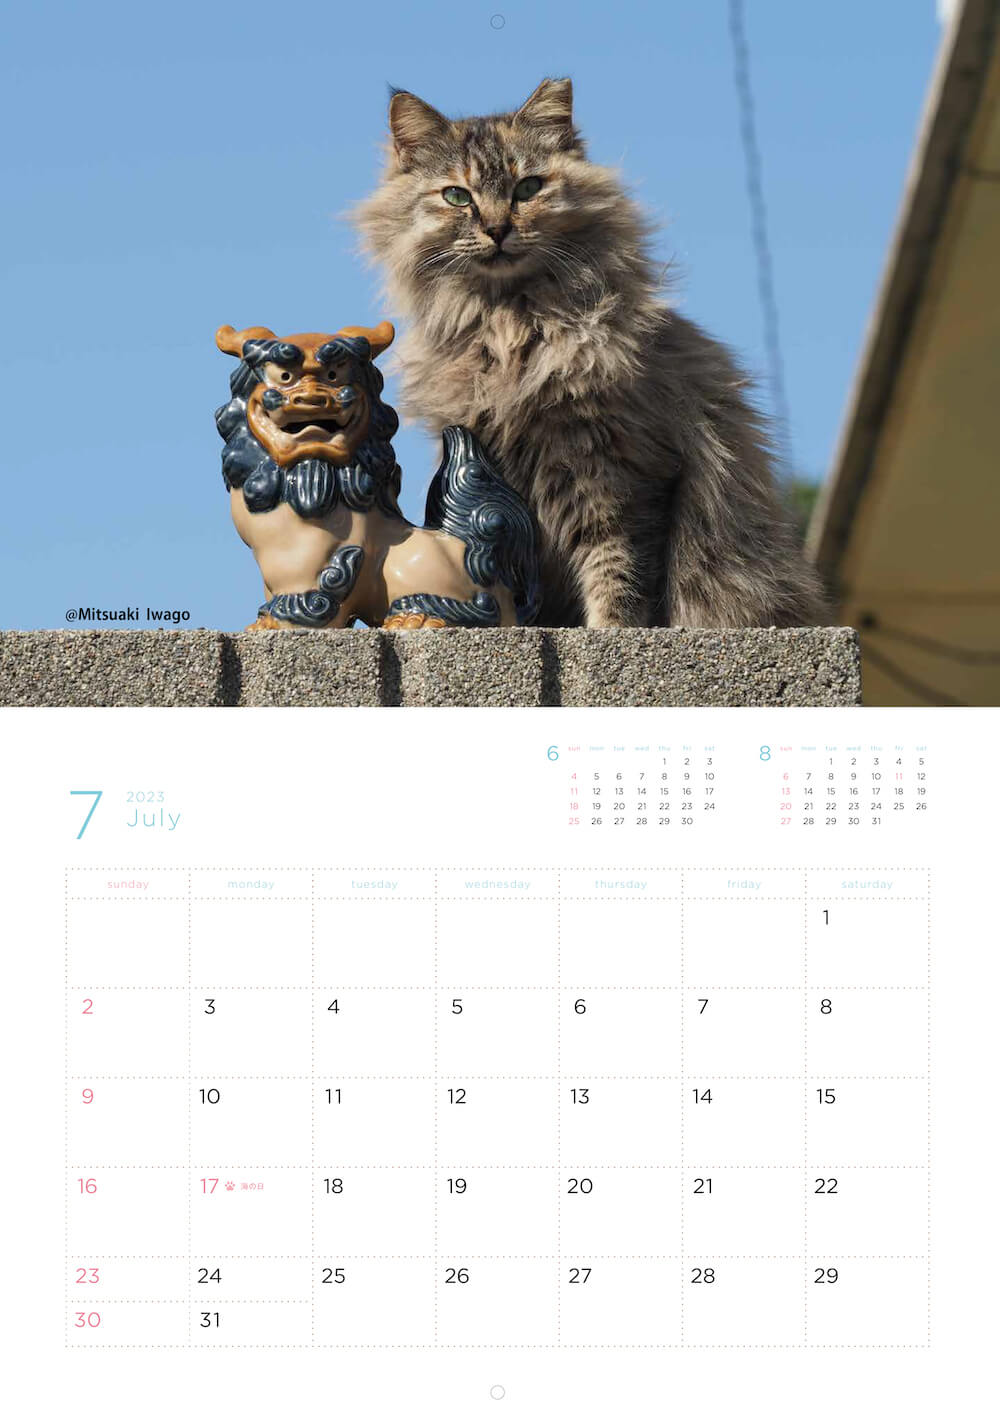 シーサーと同じポーズをとる猫の写真 by 岩合光昭